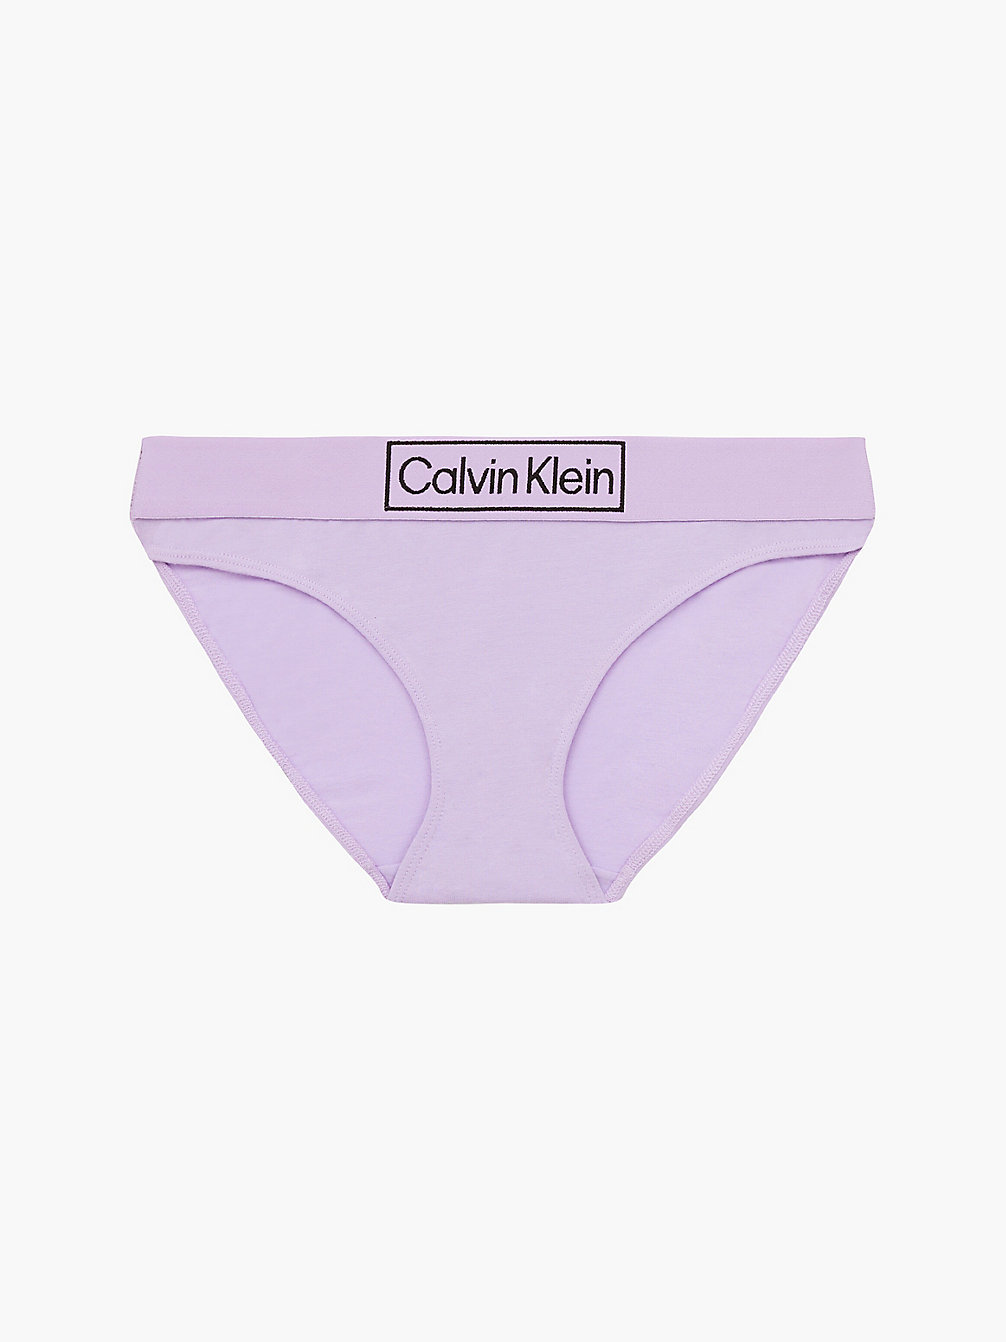 VERVAIN LILAC Bikini Brief - Reimagined Heritage undefined women Calvin Klein